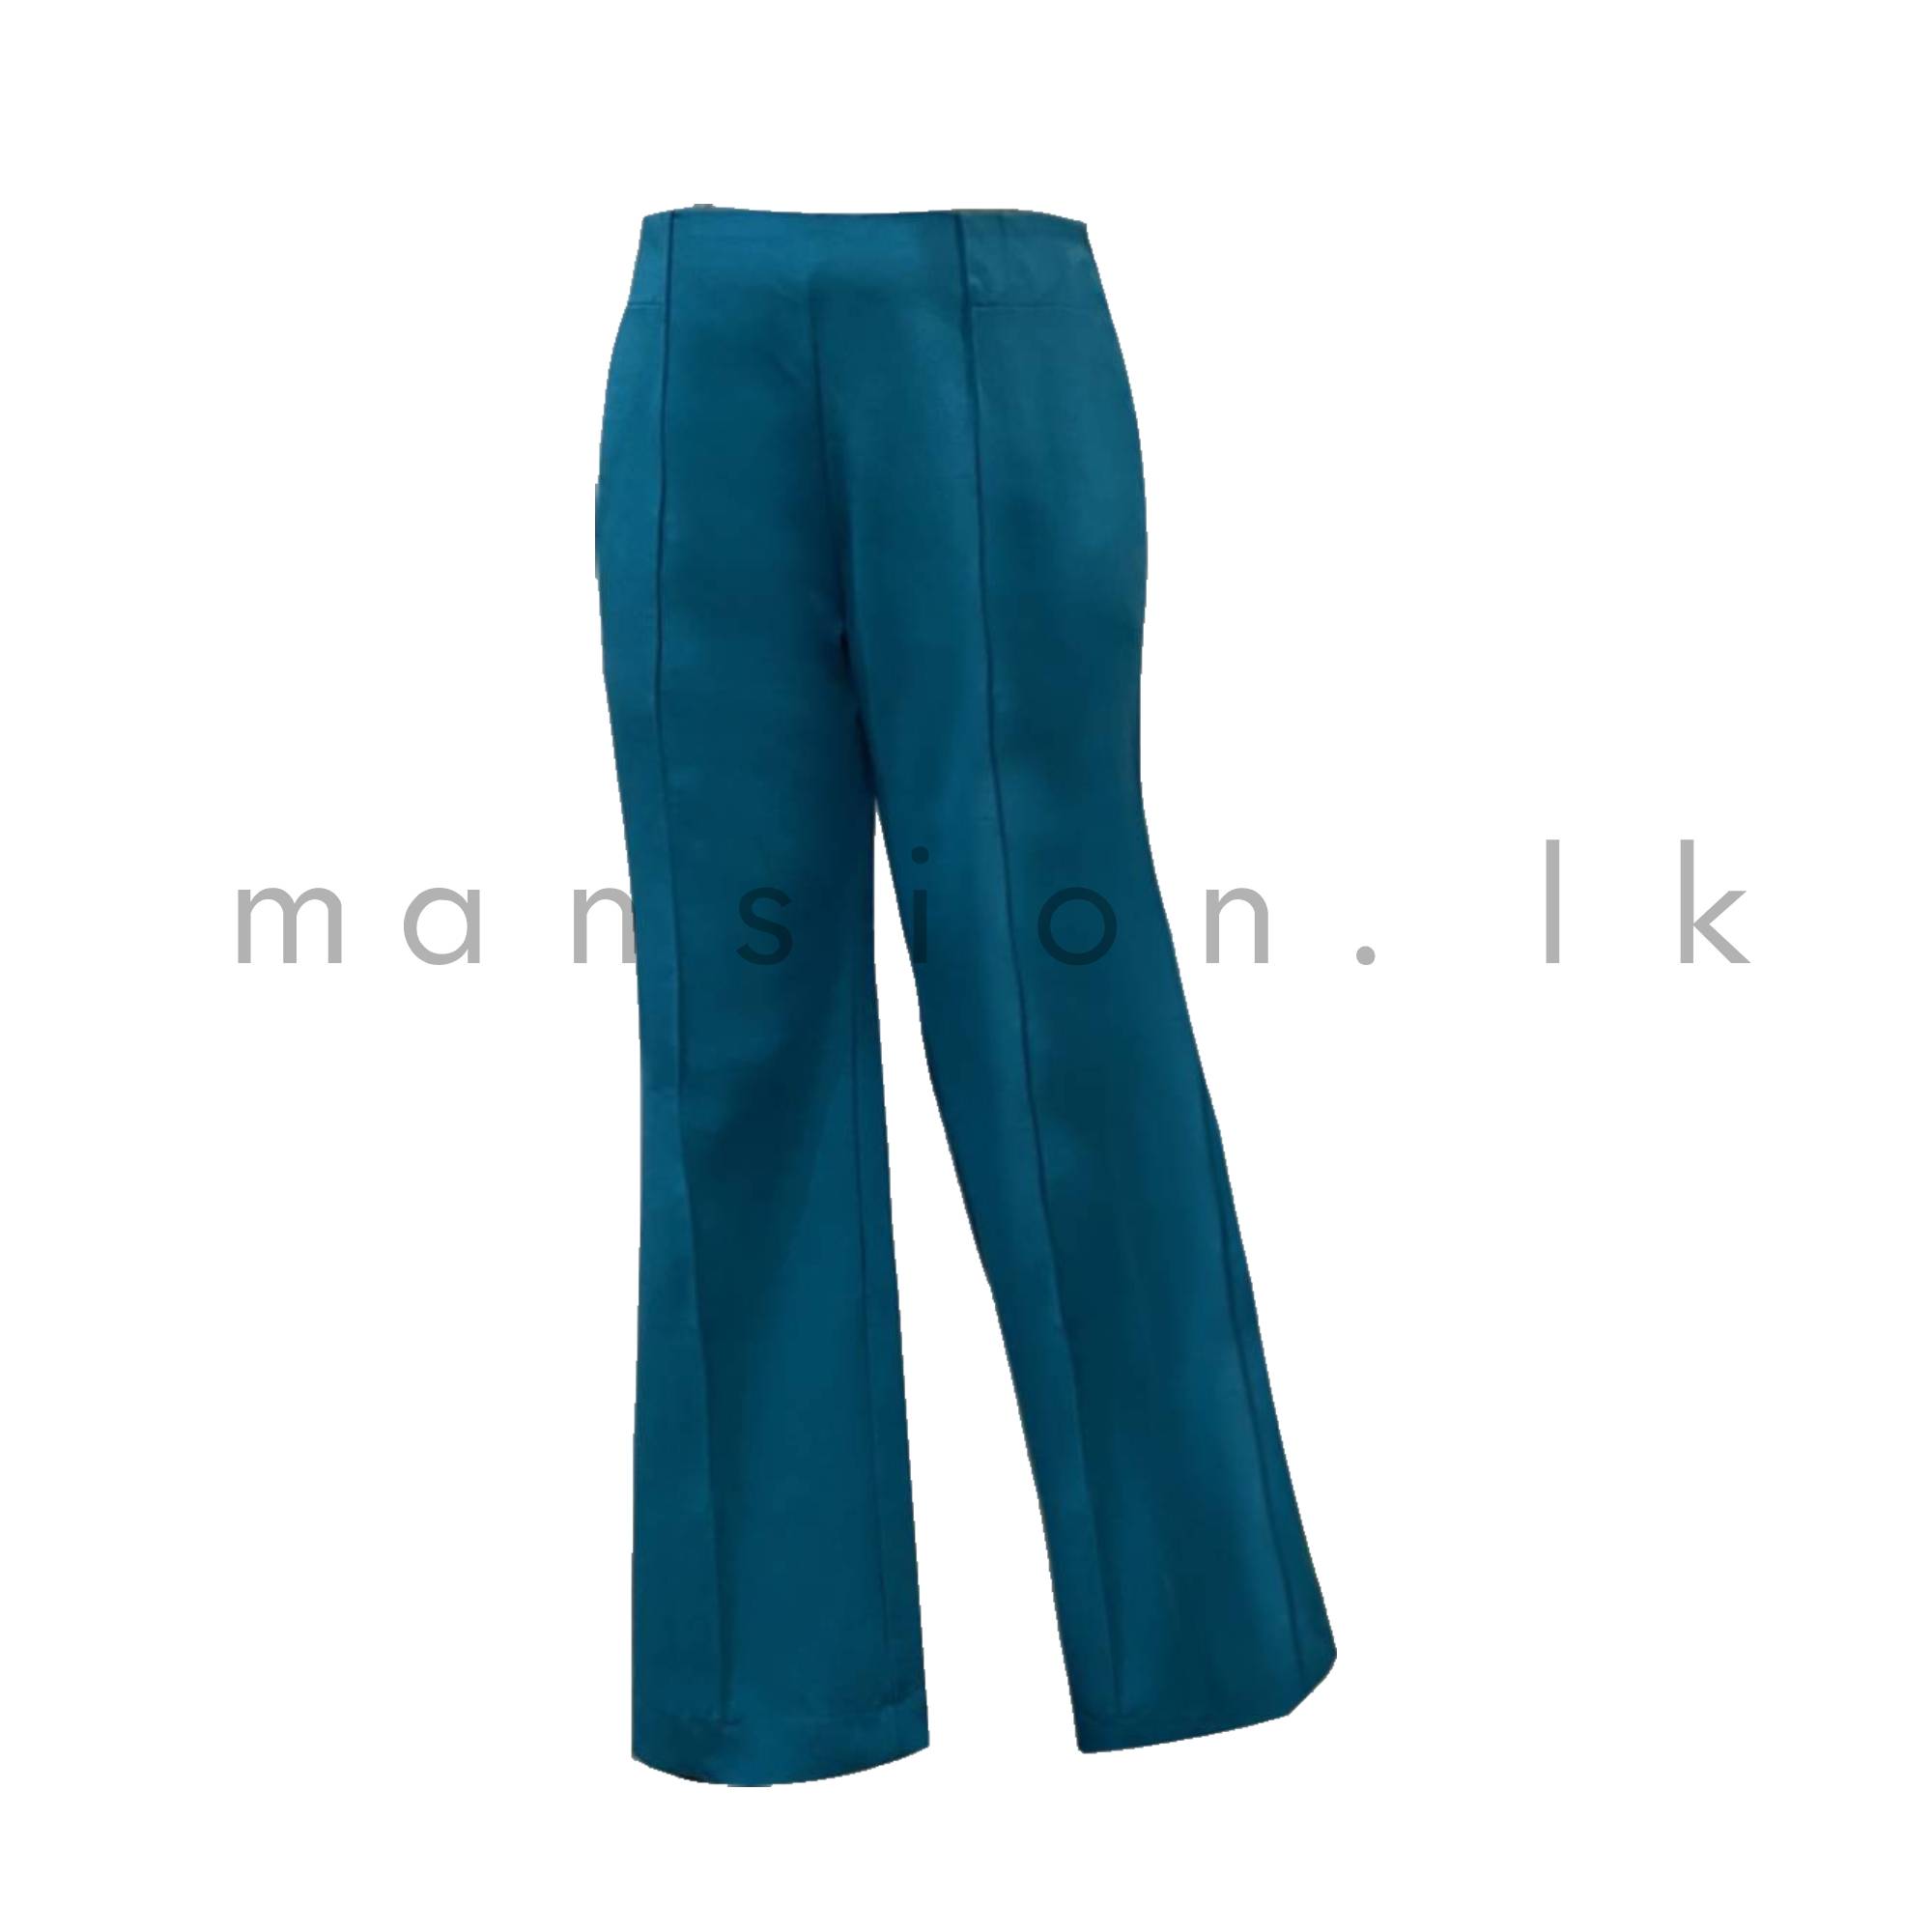 Men's Bell Bottom Pants 60s 70s Retro Flare Formal Dress Trousers Slim Fit  Plain | eBay